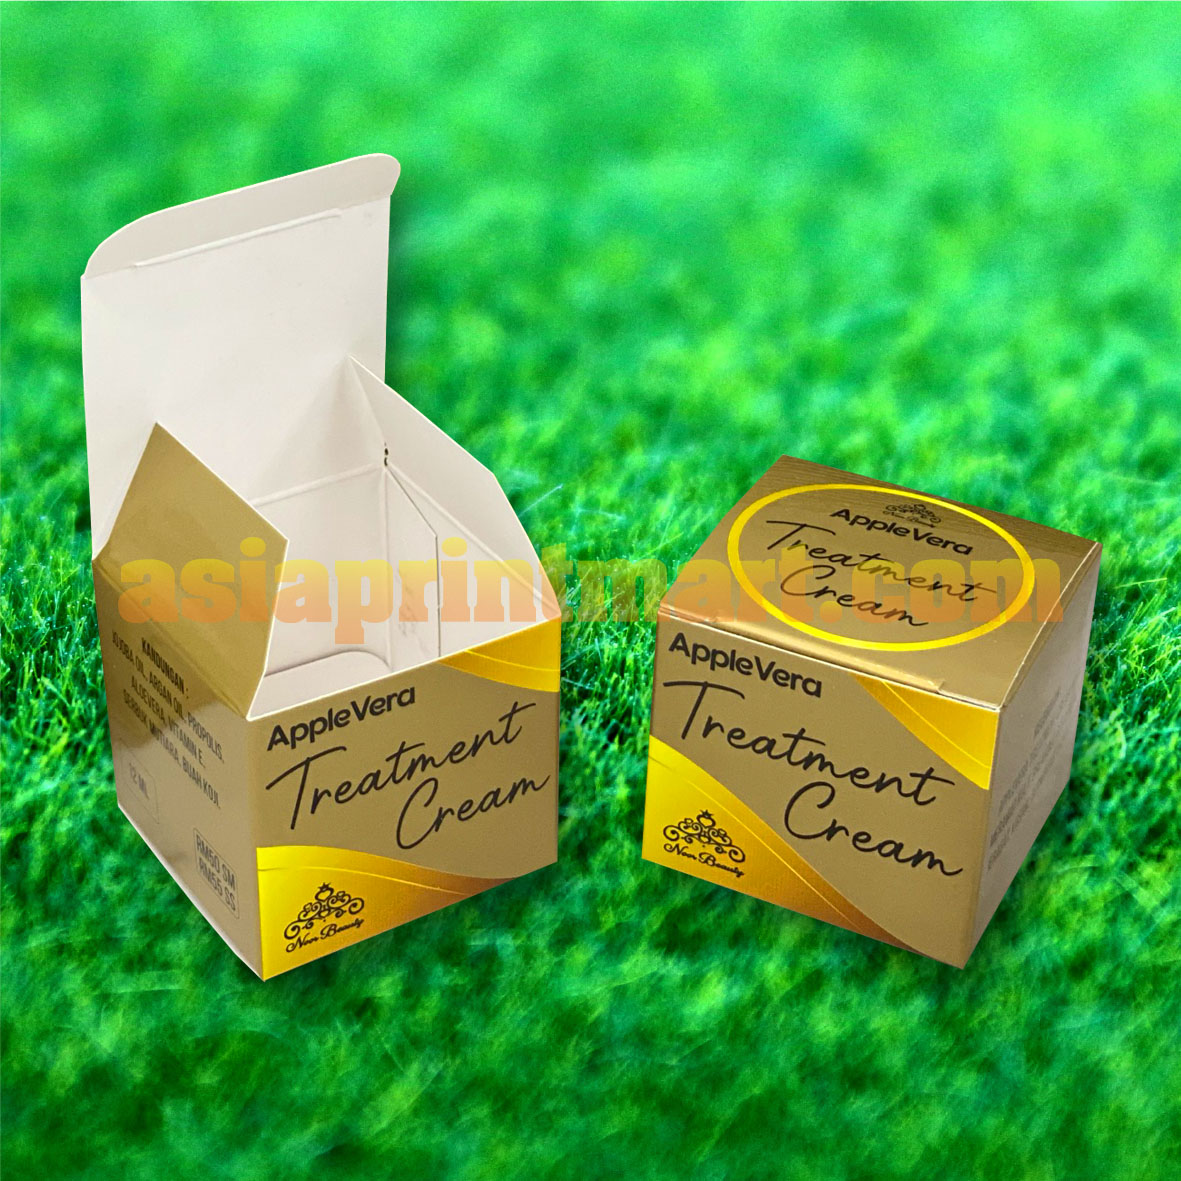 cetak kotak murah price | pembekal kotak perfume murah | ackaging printing malaysia | KL Box